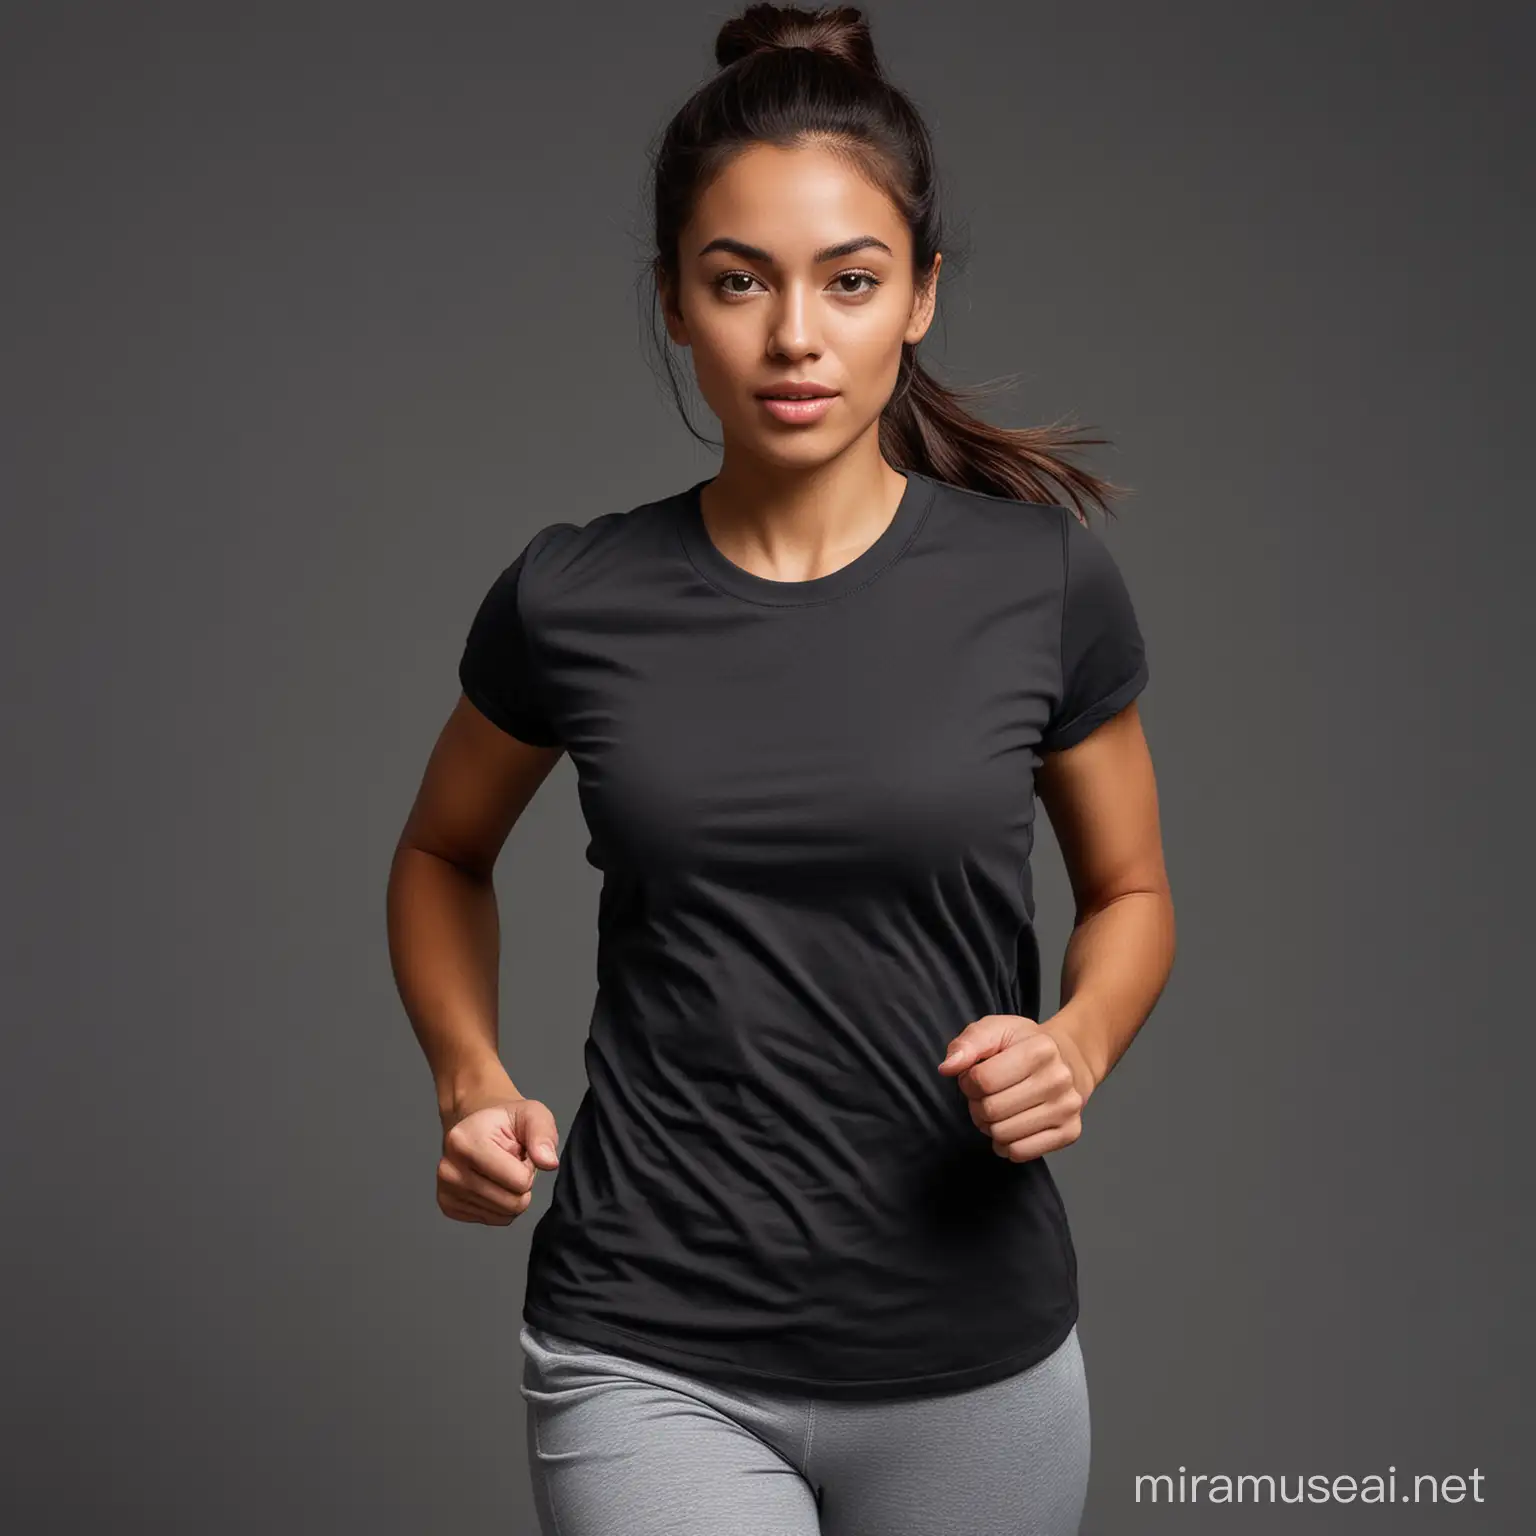 Ethnic Female Jogging in Solid Black TShirt on Dark Grey Background